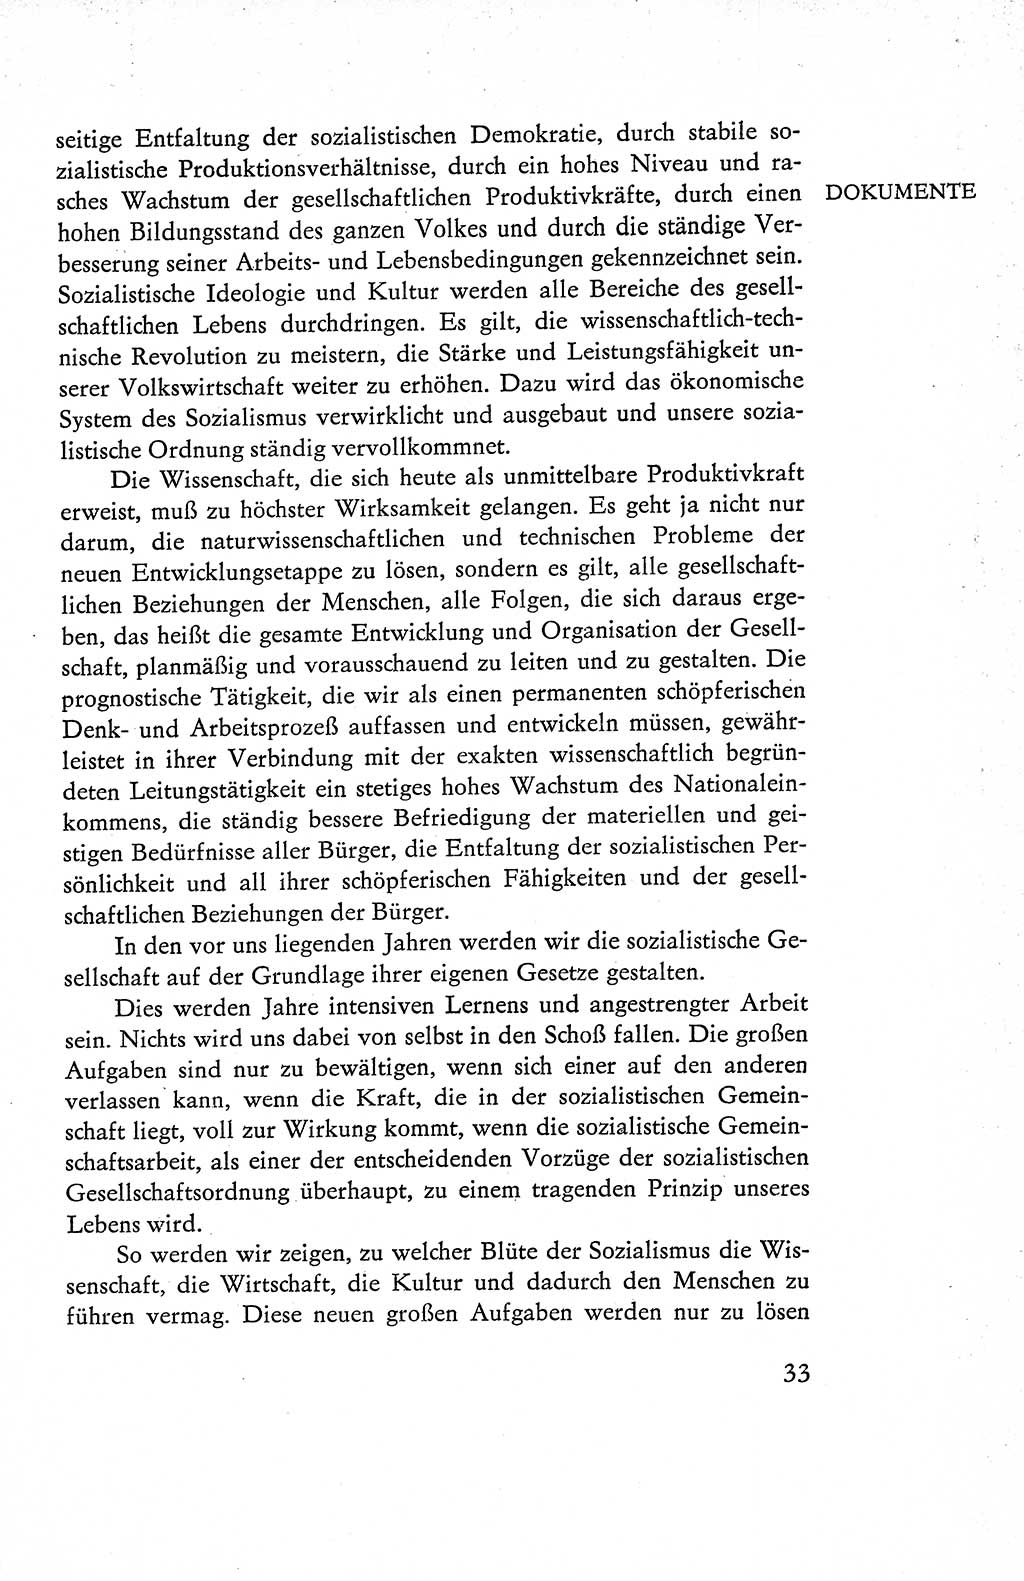 Verfassung der Deutschen Demokratischen Republik (DDR), Dokumente, Kommentar 1969, Band 1, Seite 33 (Verf. DDR Dok. Komm. 1969, Bd. 1, S. 33)